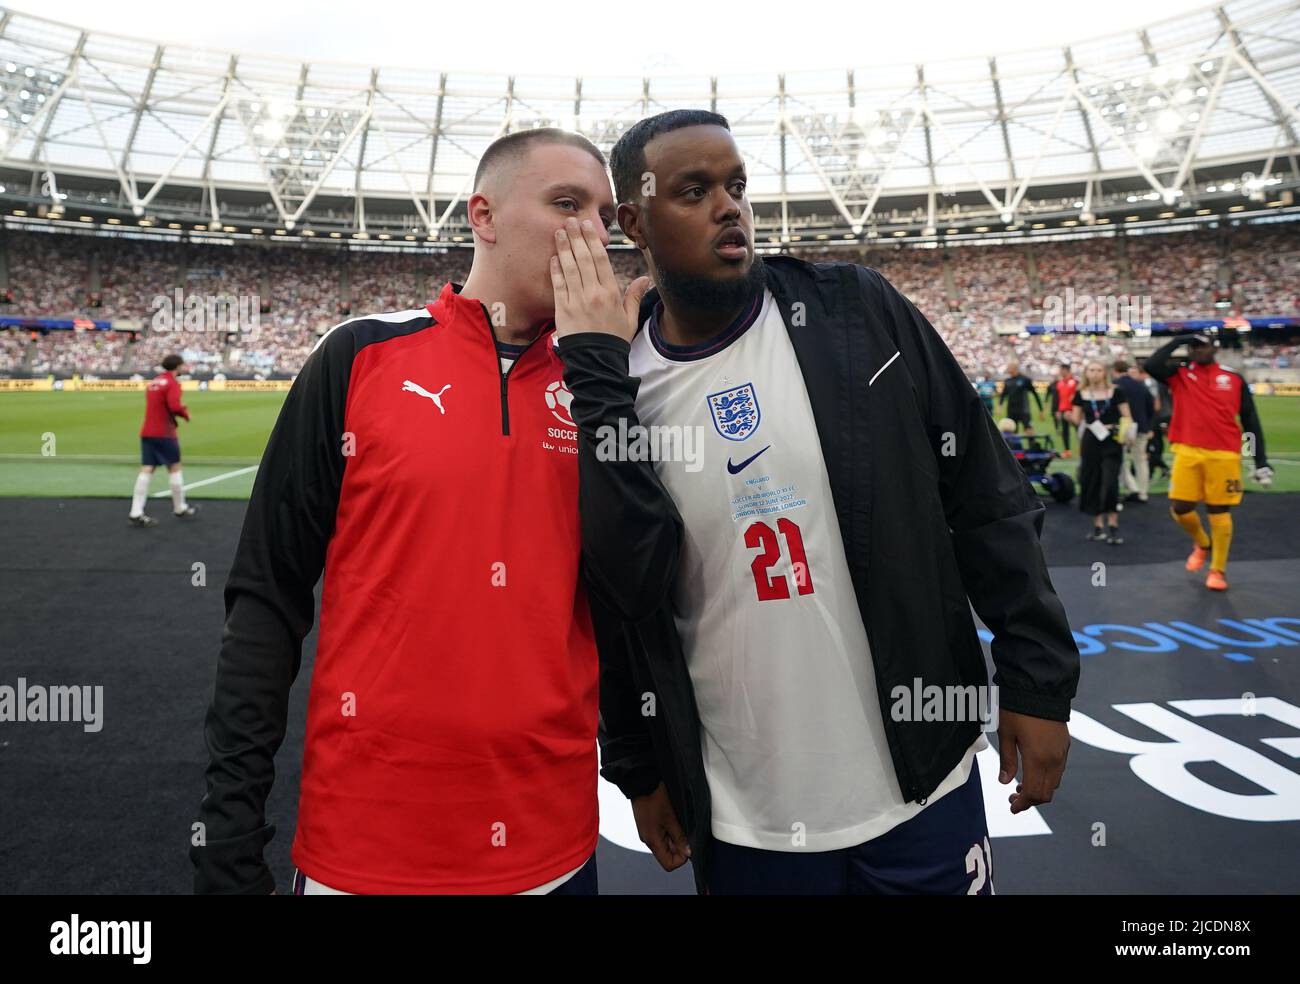 Aitch et Chunkz avant le match de l'aide au football pour l'UNICEF au stade de Londres, Londres. Date de la photo: Dimanche 12 juin 2022. Banque D'Images